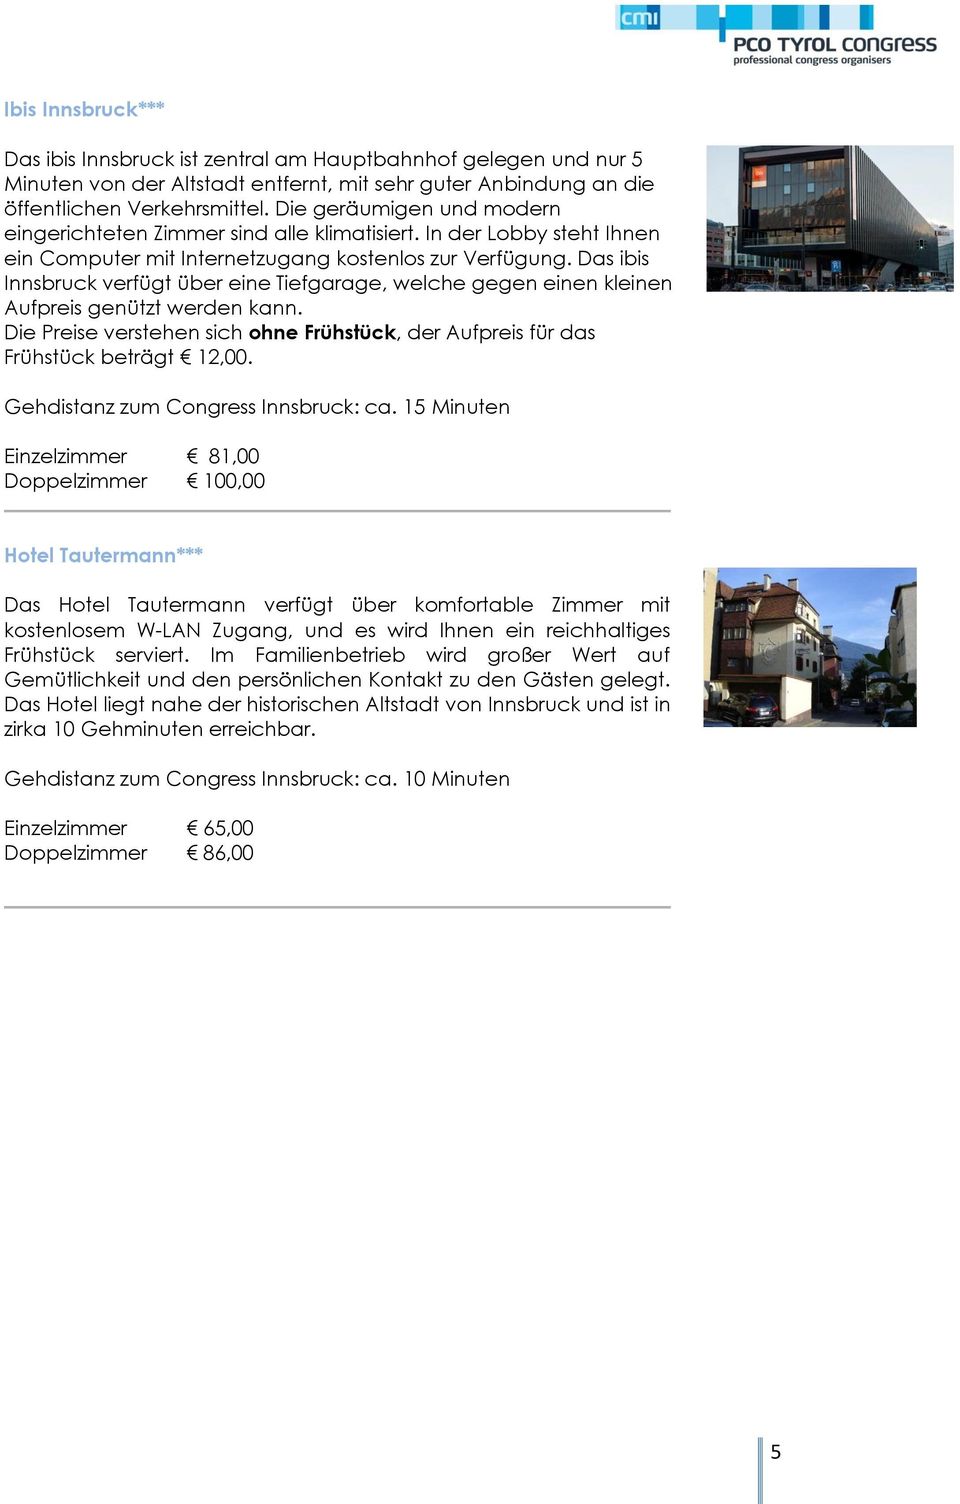 Das ibis Innsbruck verfügt über eine Tiefgarage, welche gegen einen kleinen Aufpreis genützt werden kann. Die Preise verstehen sich ohne Frühstück, der Aufpreis für das Frühstück beträgt 12,00.